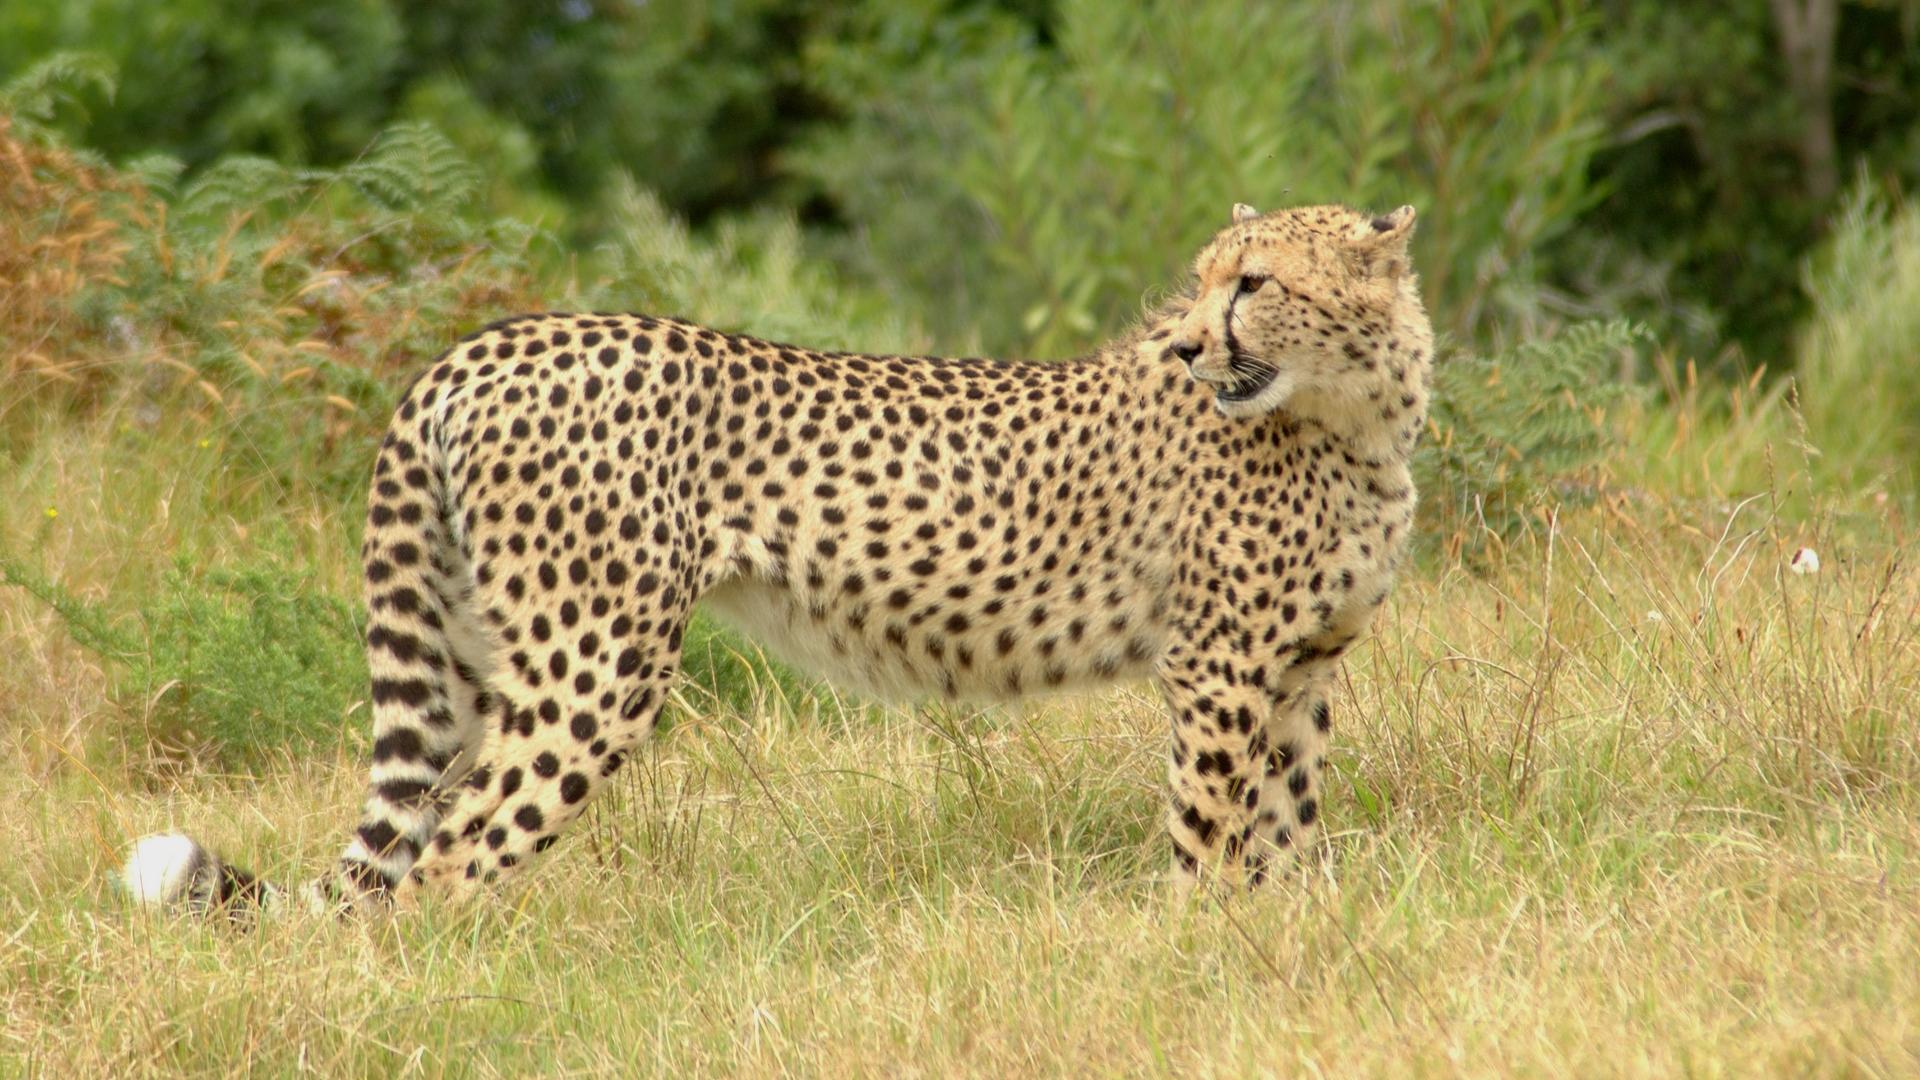 Fotografia unui ghepard în iarbă